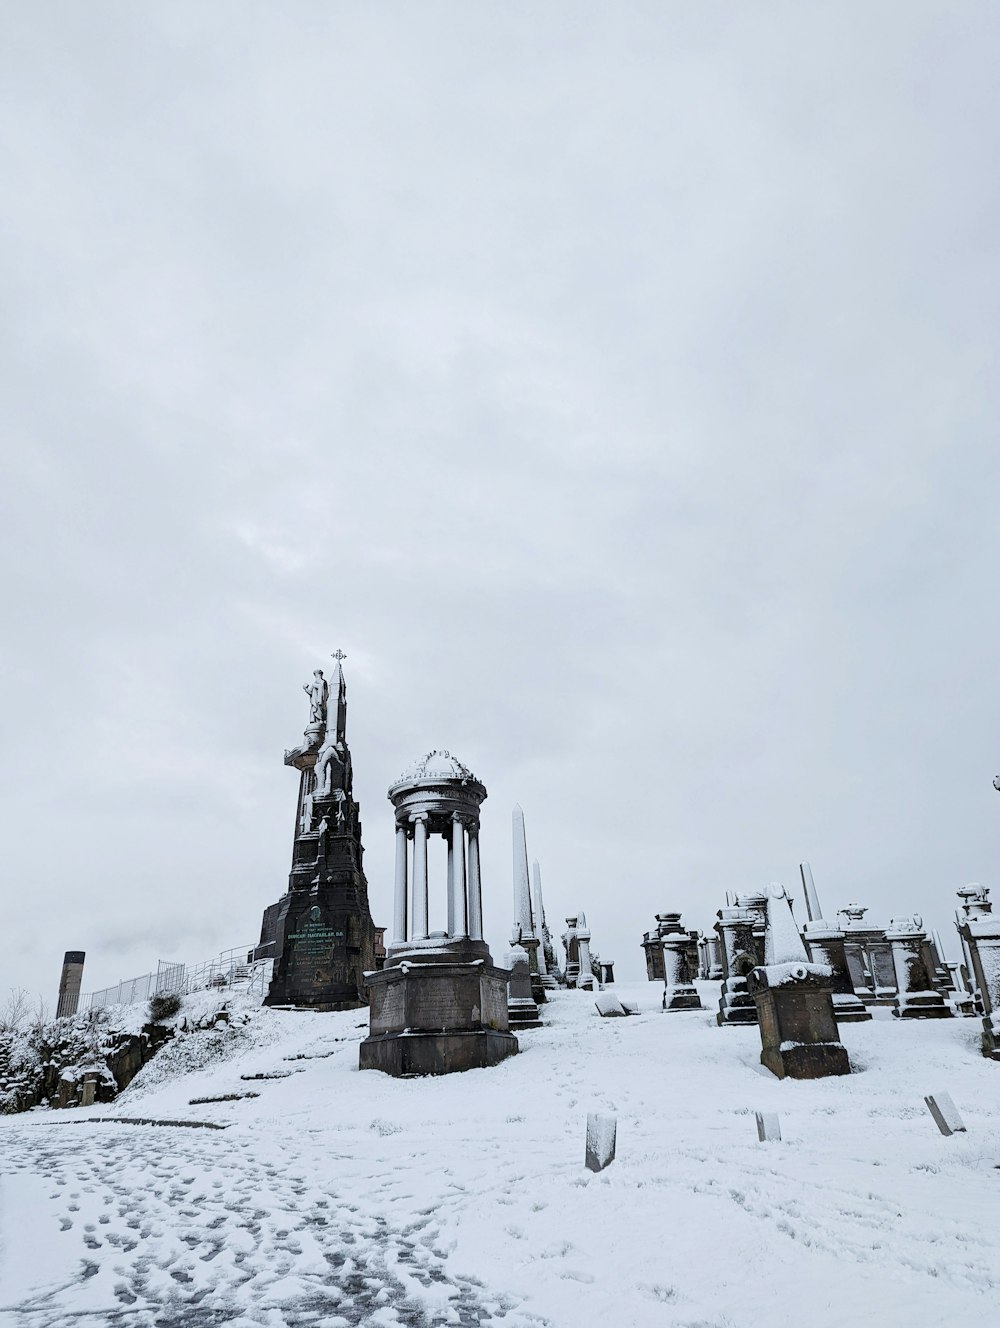 Un cementerio cubierto de nieve con una torre del reloj al fondo